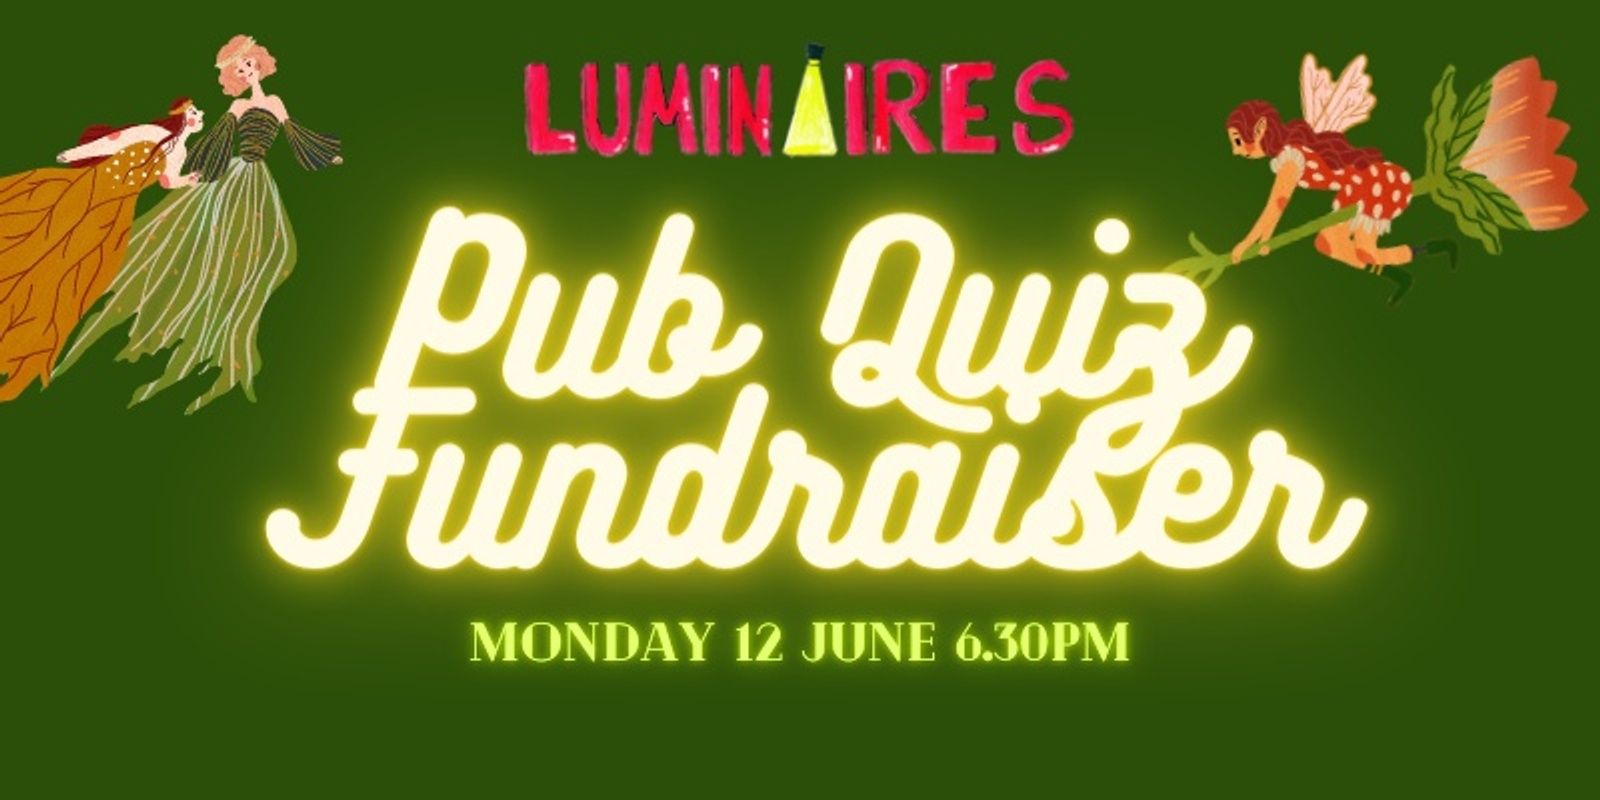 Banner image for Luminaires Pub Quiz